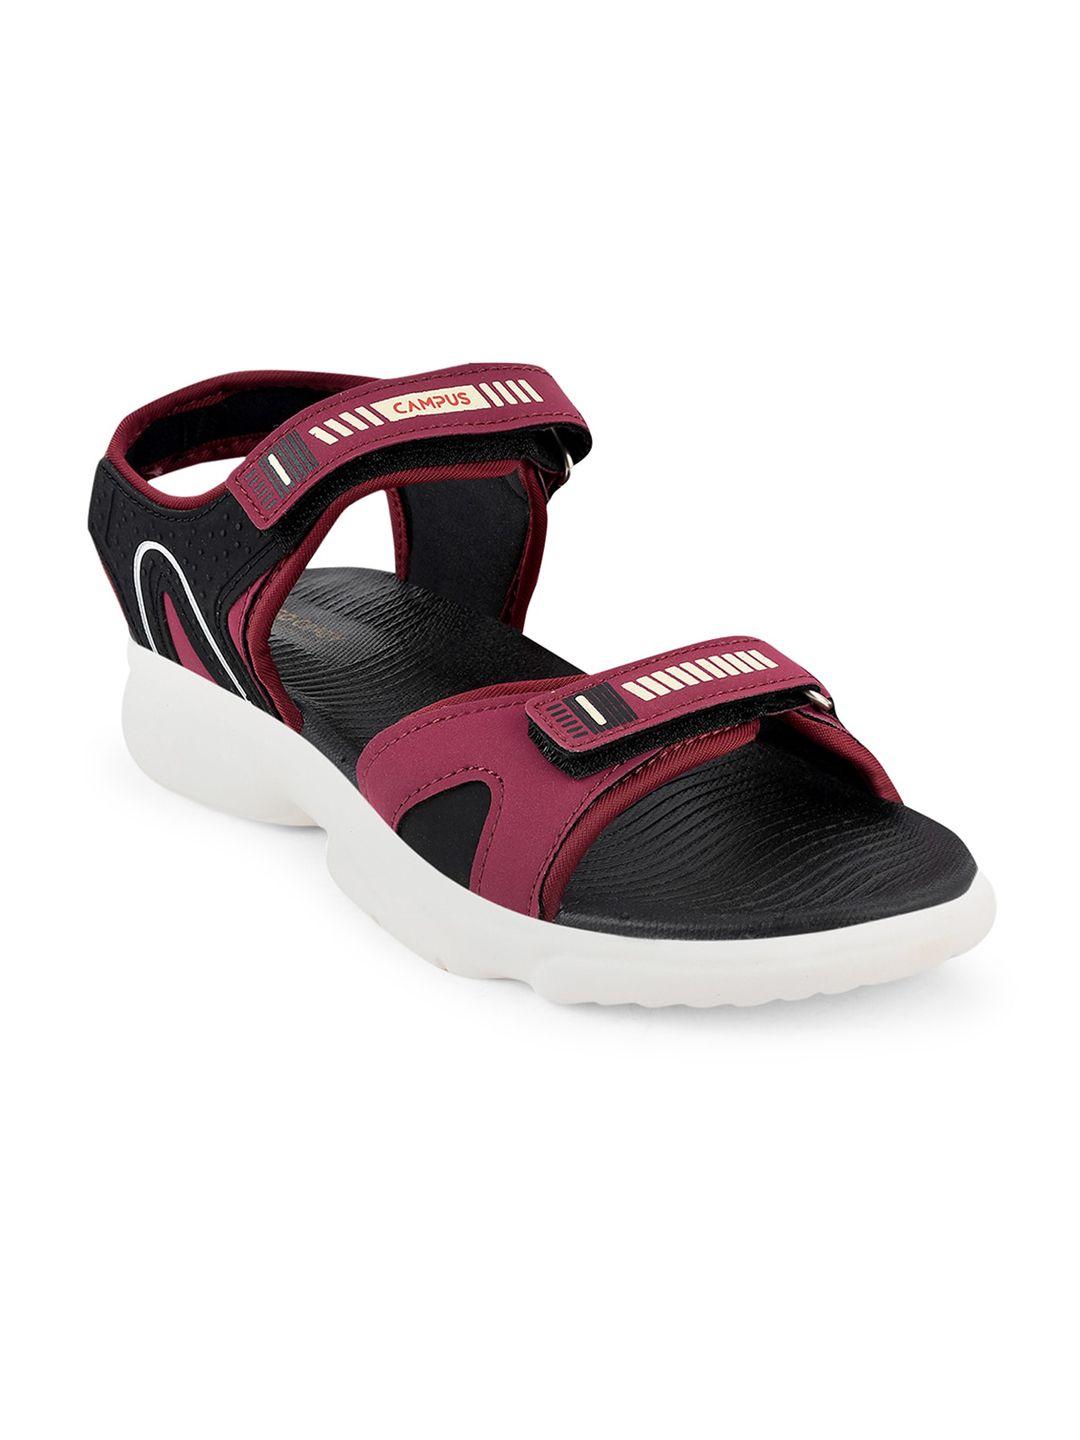 campus-kids-burgundy-&-black-solid-sports-sandal